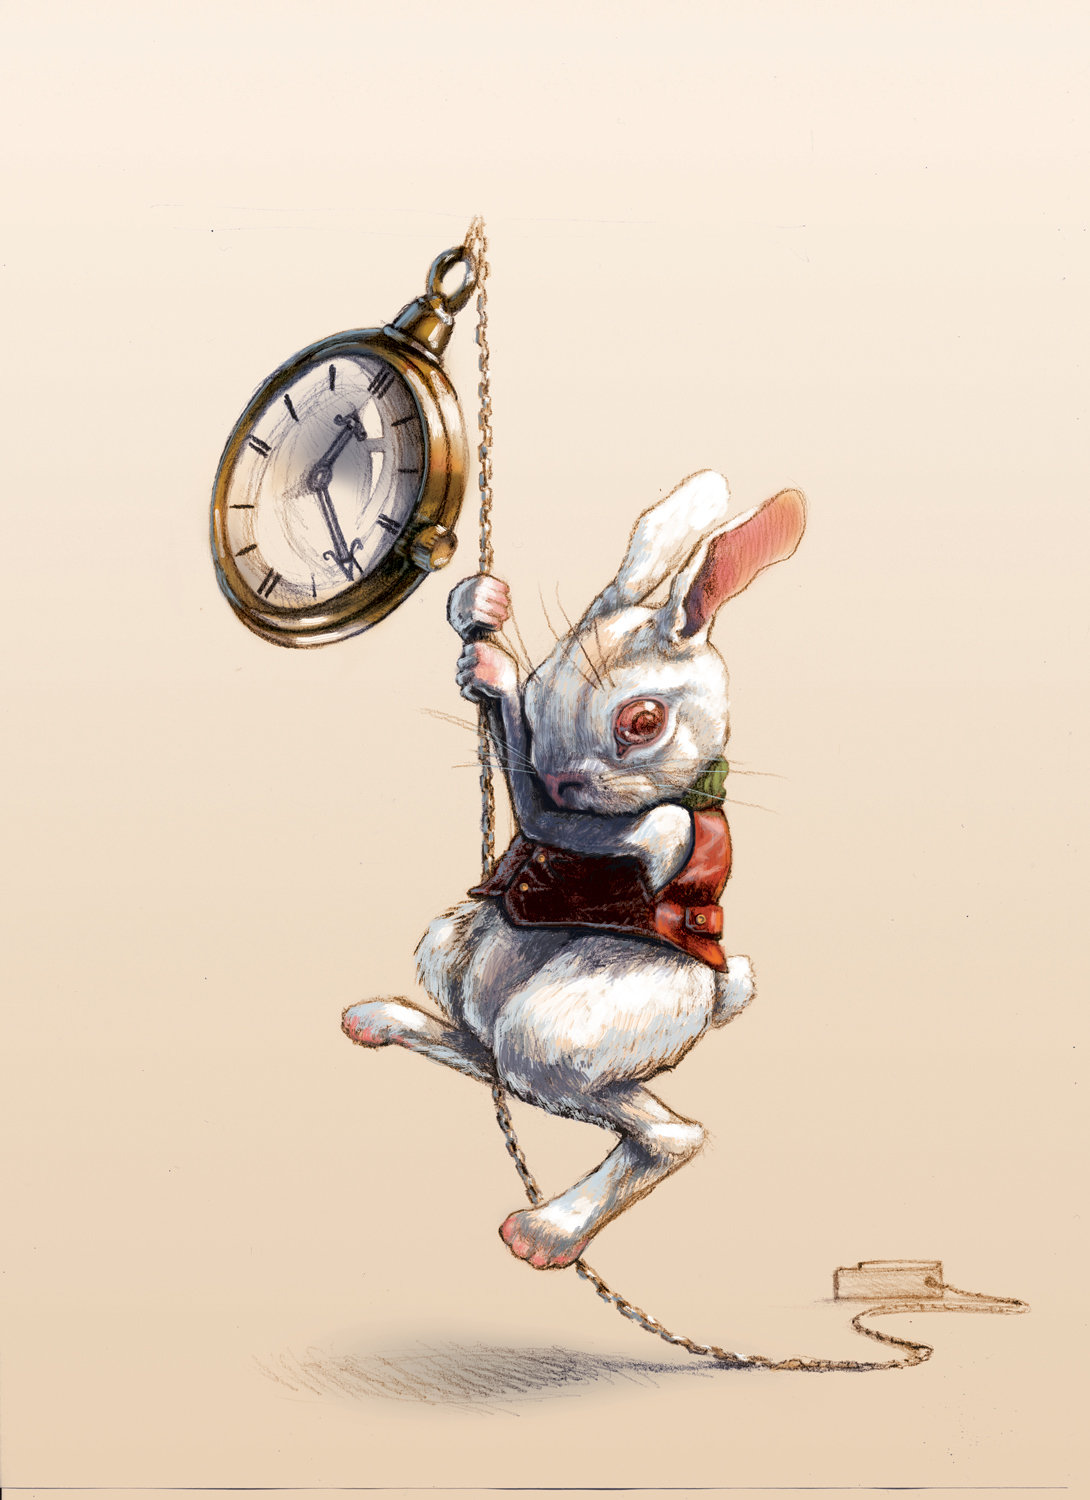 ArtStation - The White Rabbit for cover, Denis Kornev